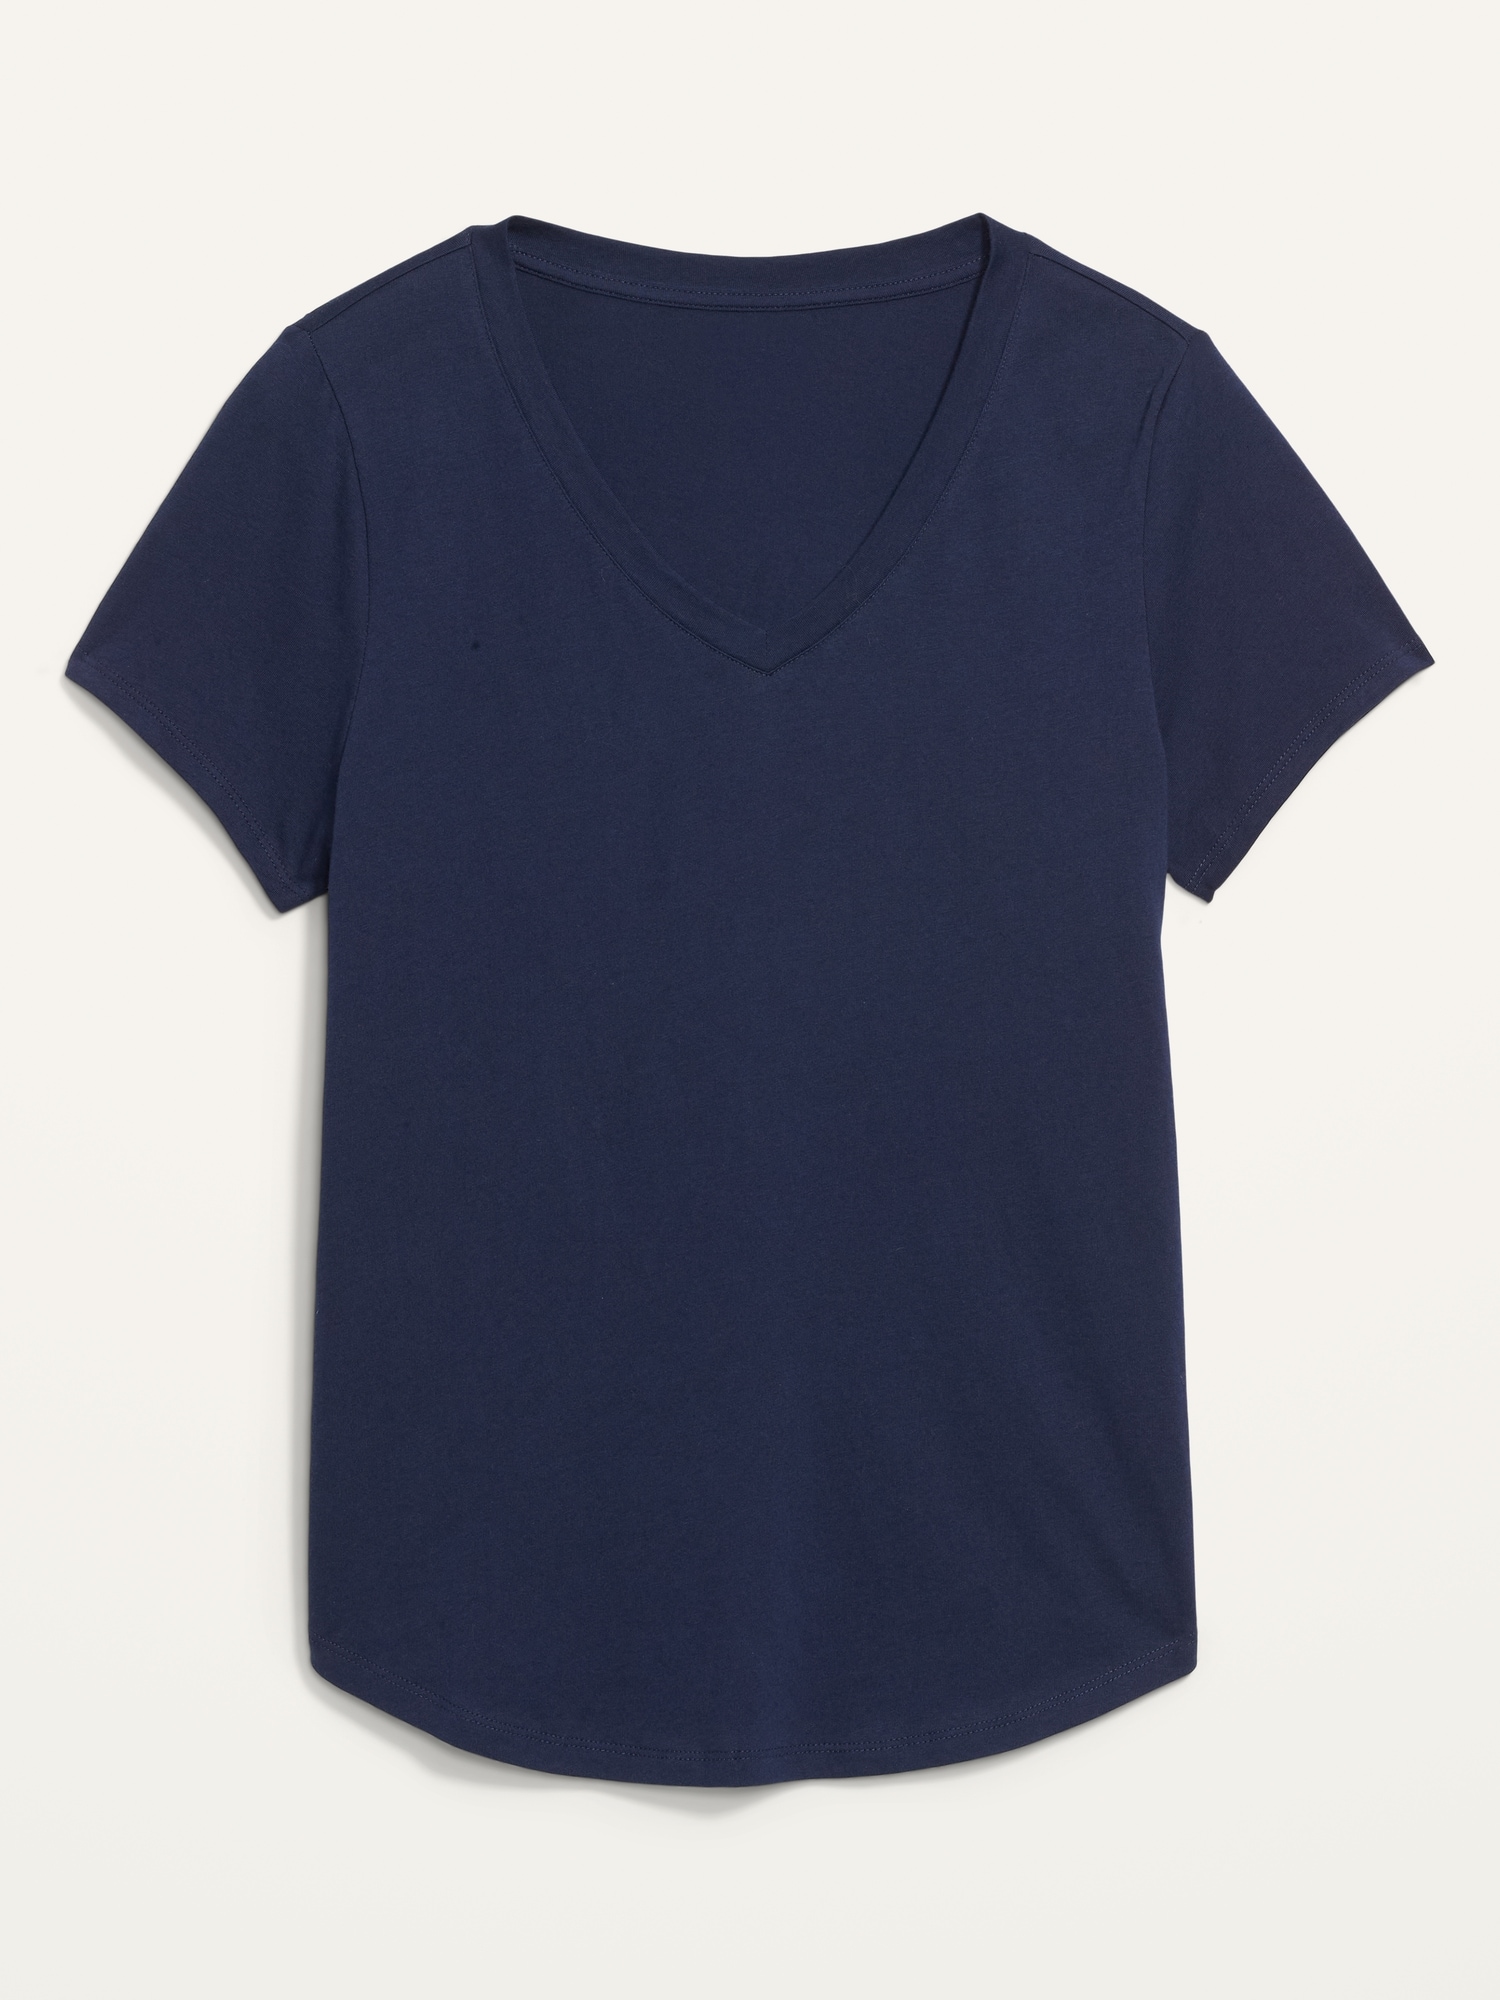 EveryWear V-Neck T-Shirt for Women | Old Navy